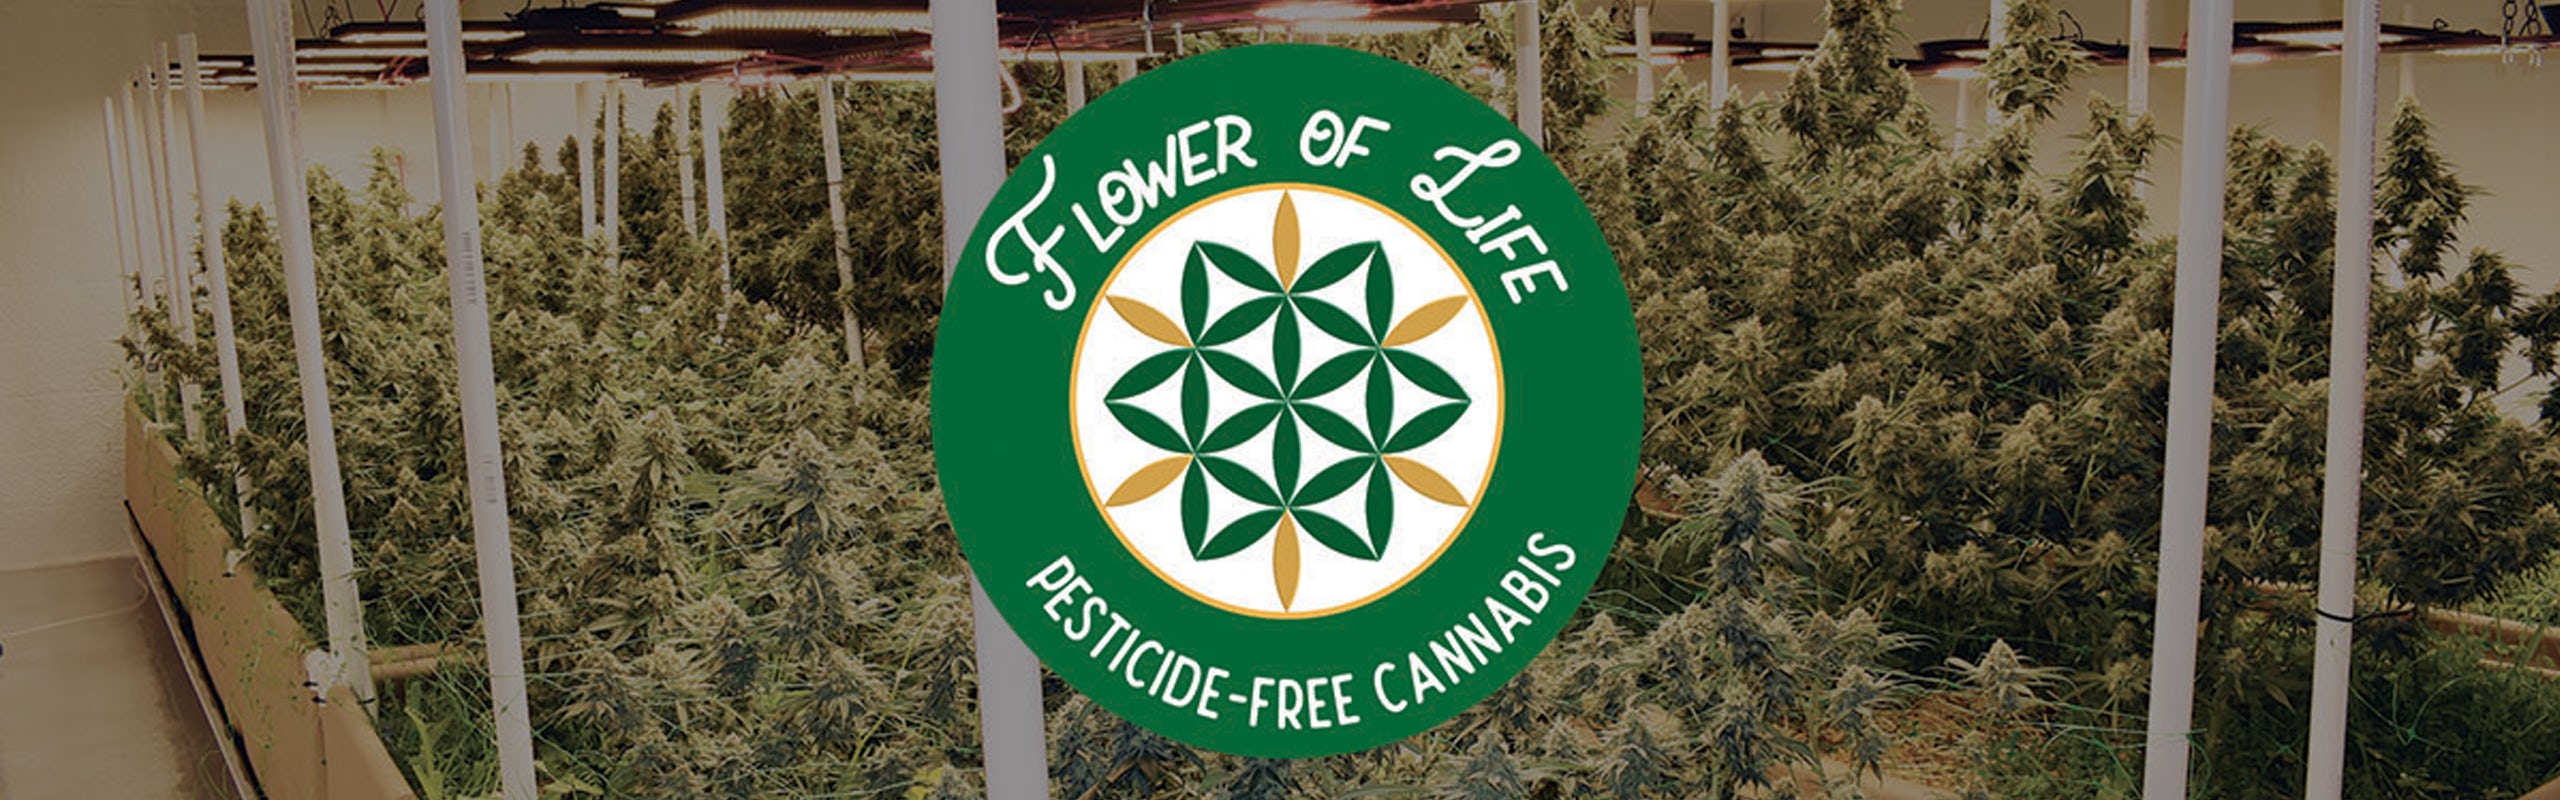 Flower of Life banner